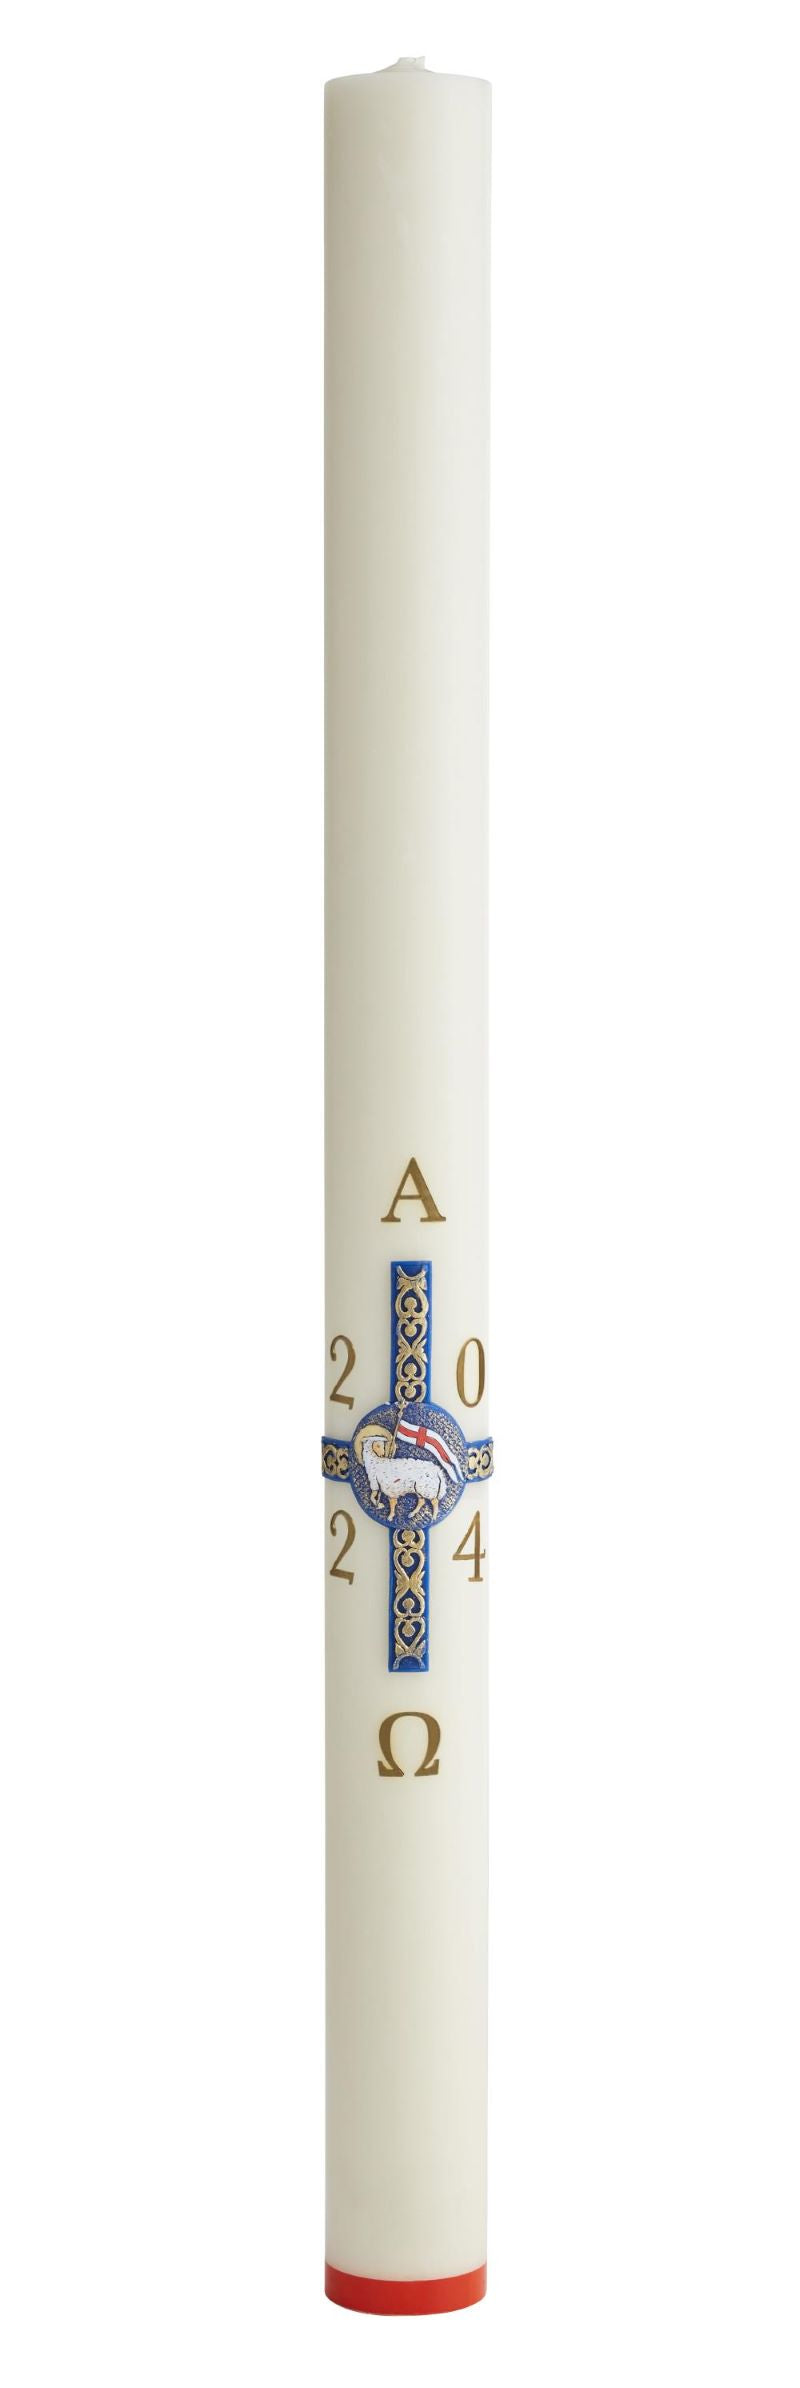 Le cierge Pascal Croix Agneau Pascal est disponible en diamètre 80 et 90 mm et 3 hauteurs (80 cm / 100 cm / 120 cm). Ciergerie Desfossés